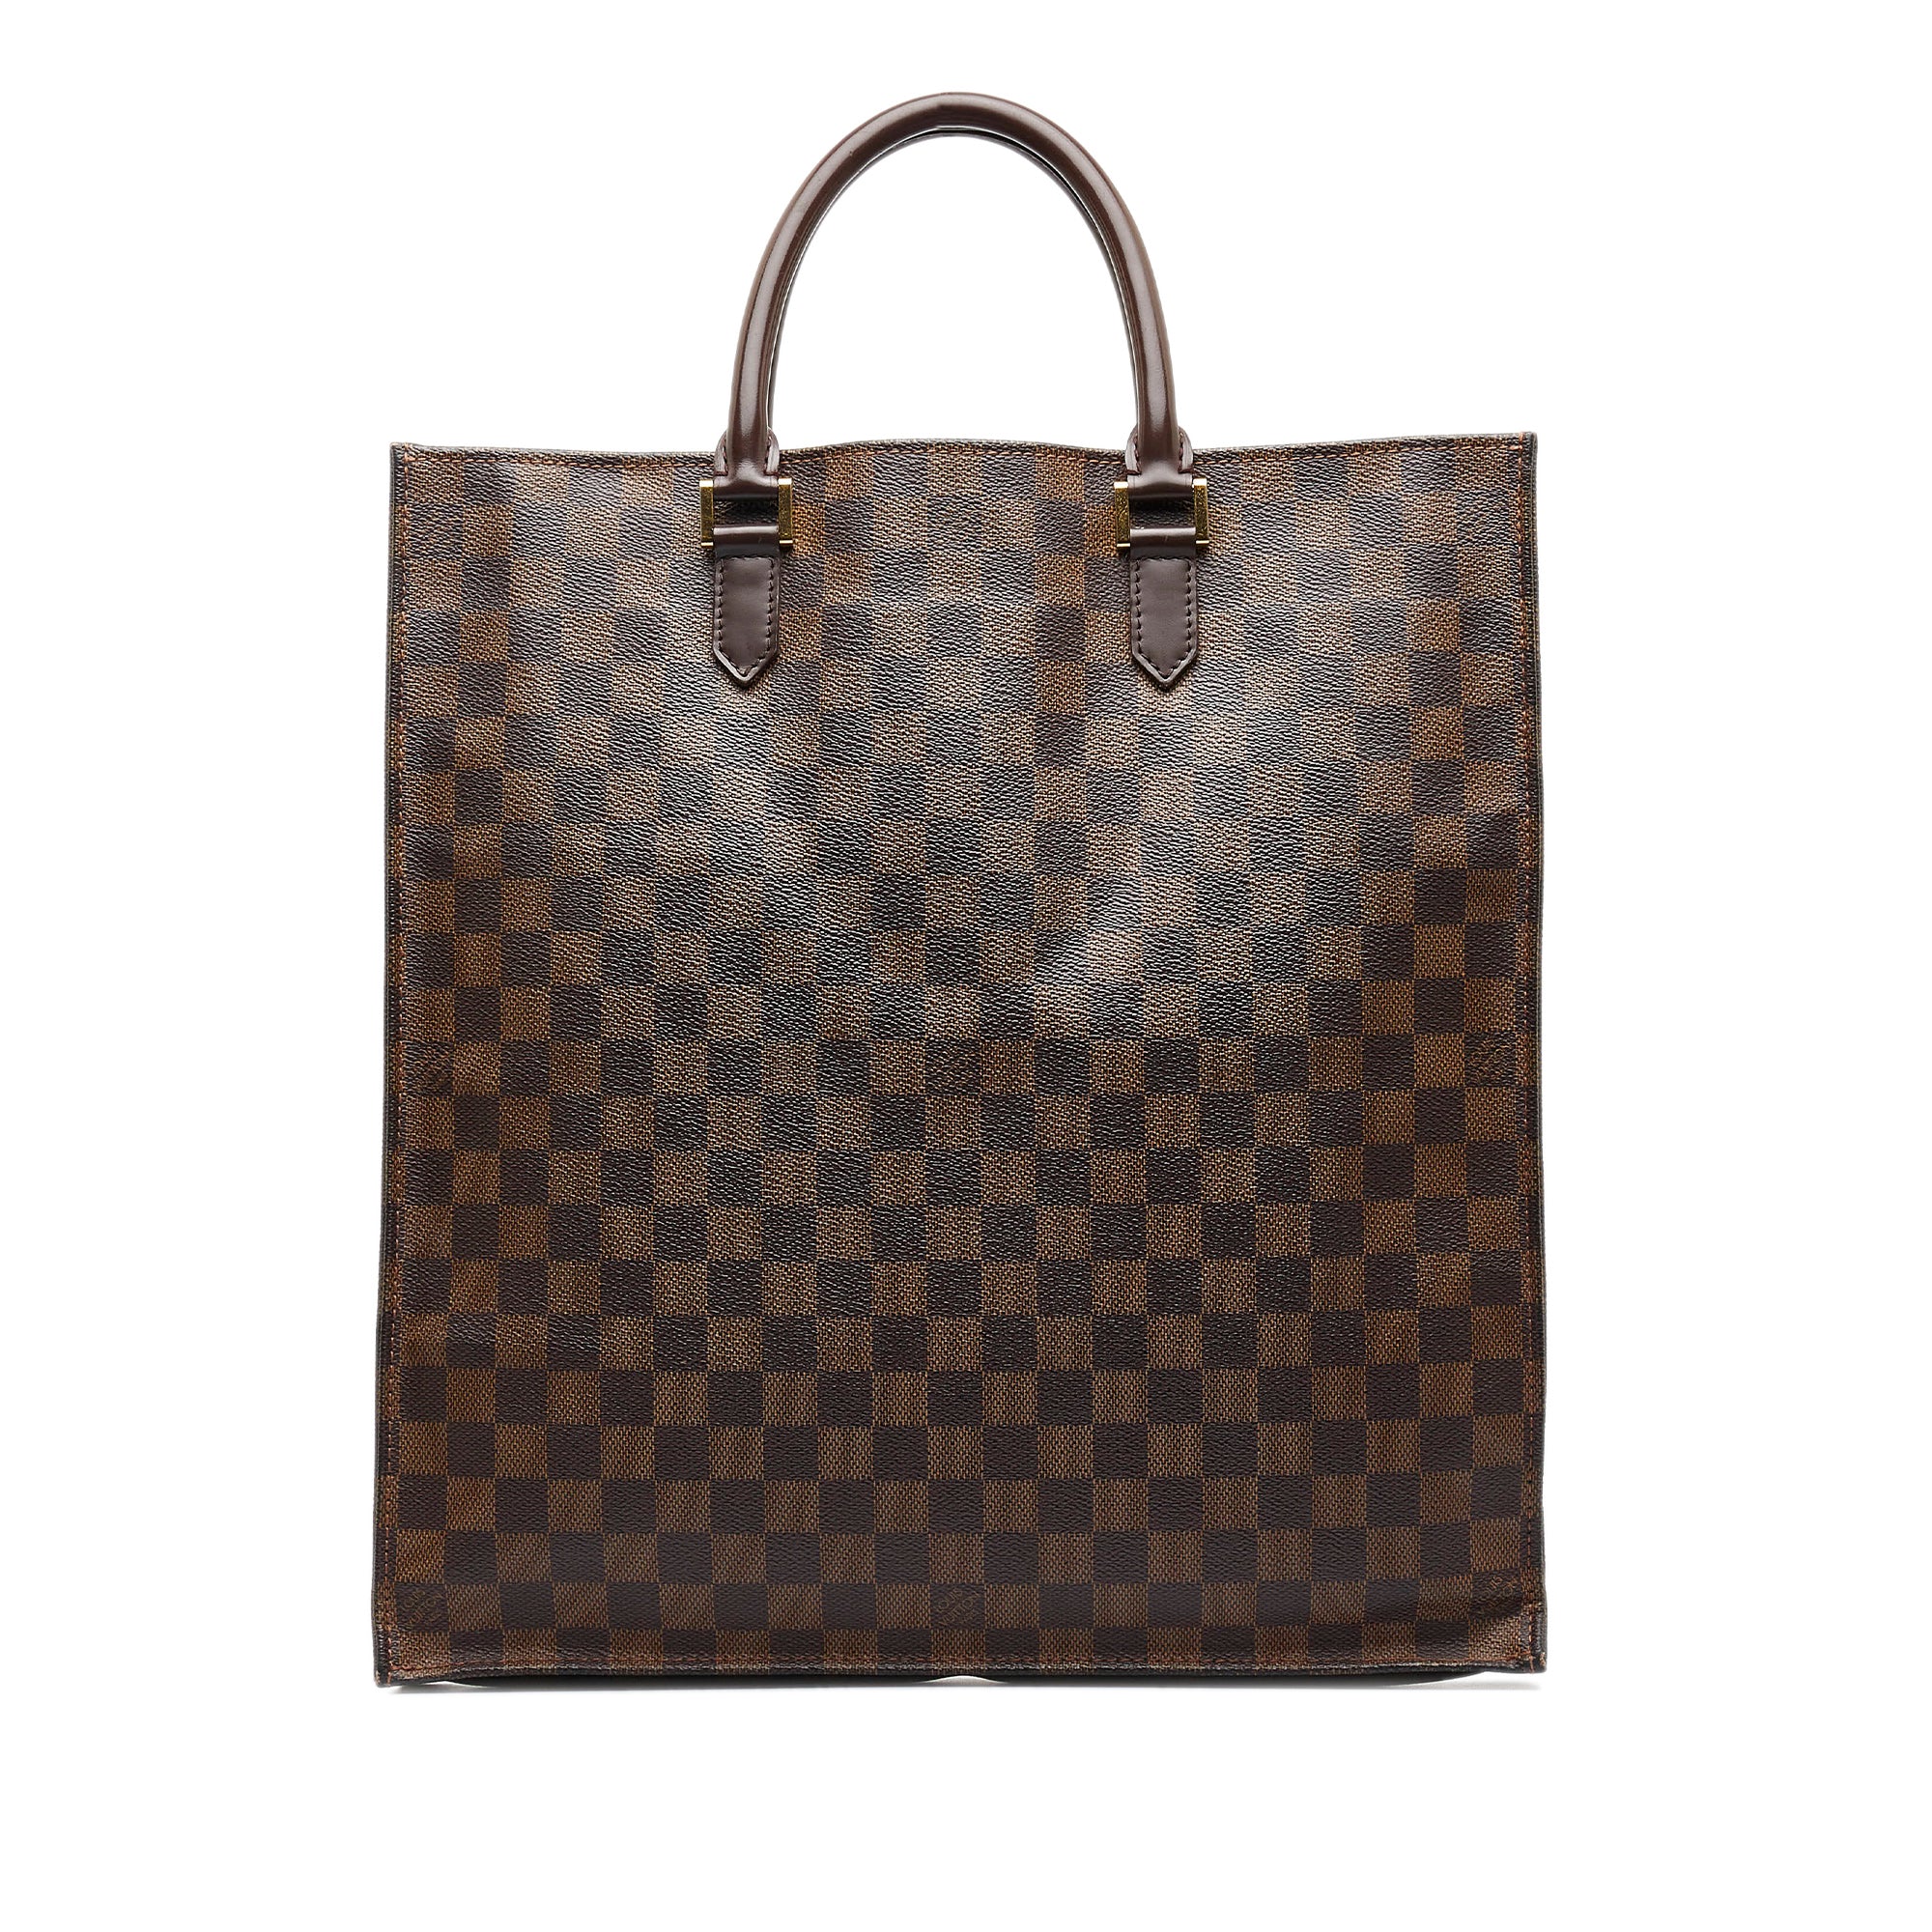 Brown Louis Vuitton Damier Ebene Sac Plat Tote Bag